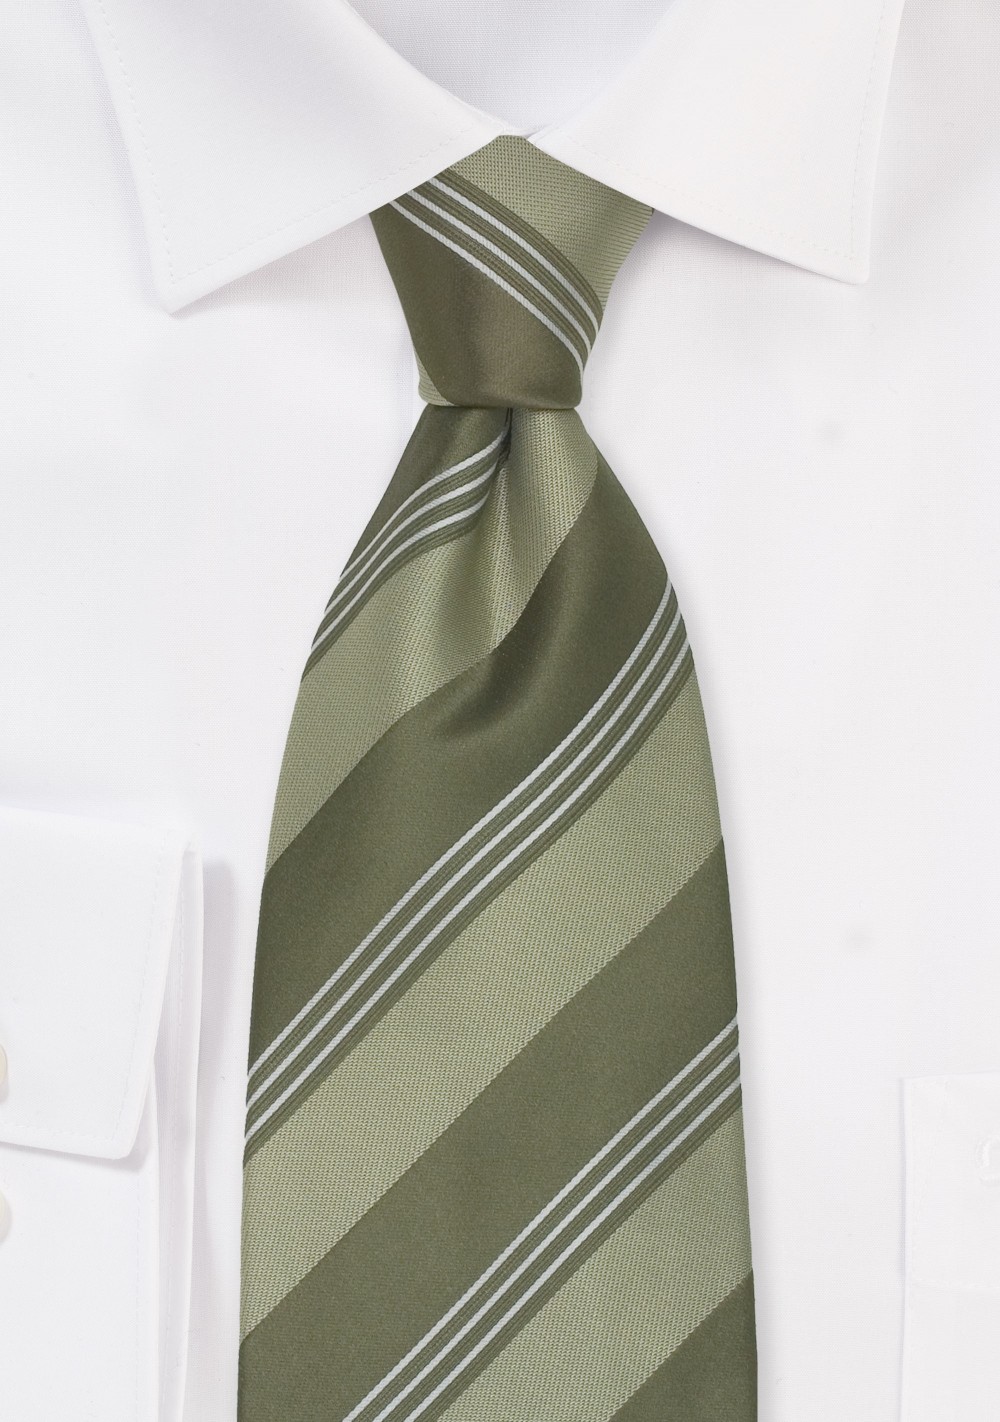 Brand Name XL Ties - XL necktie by Cavallieri